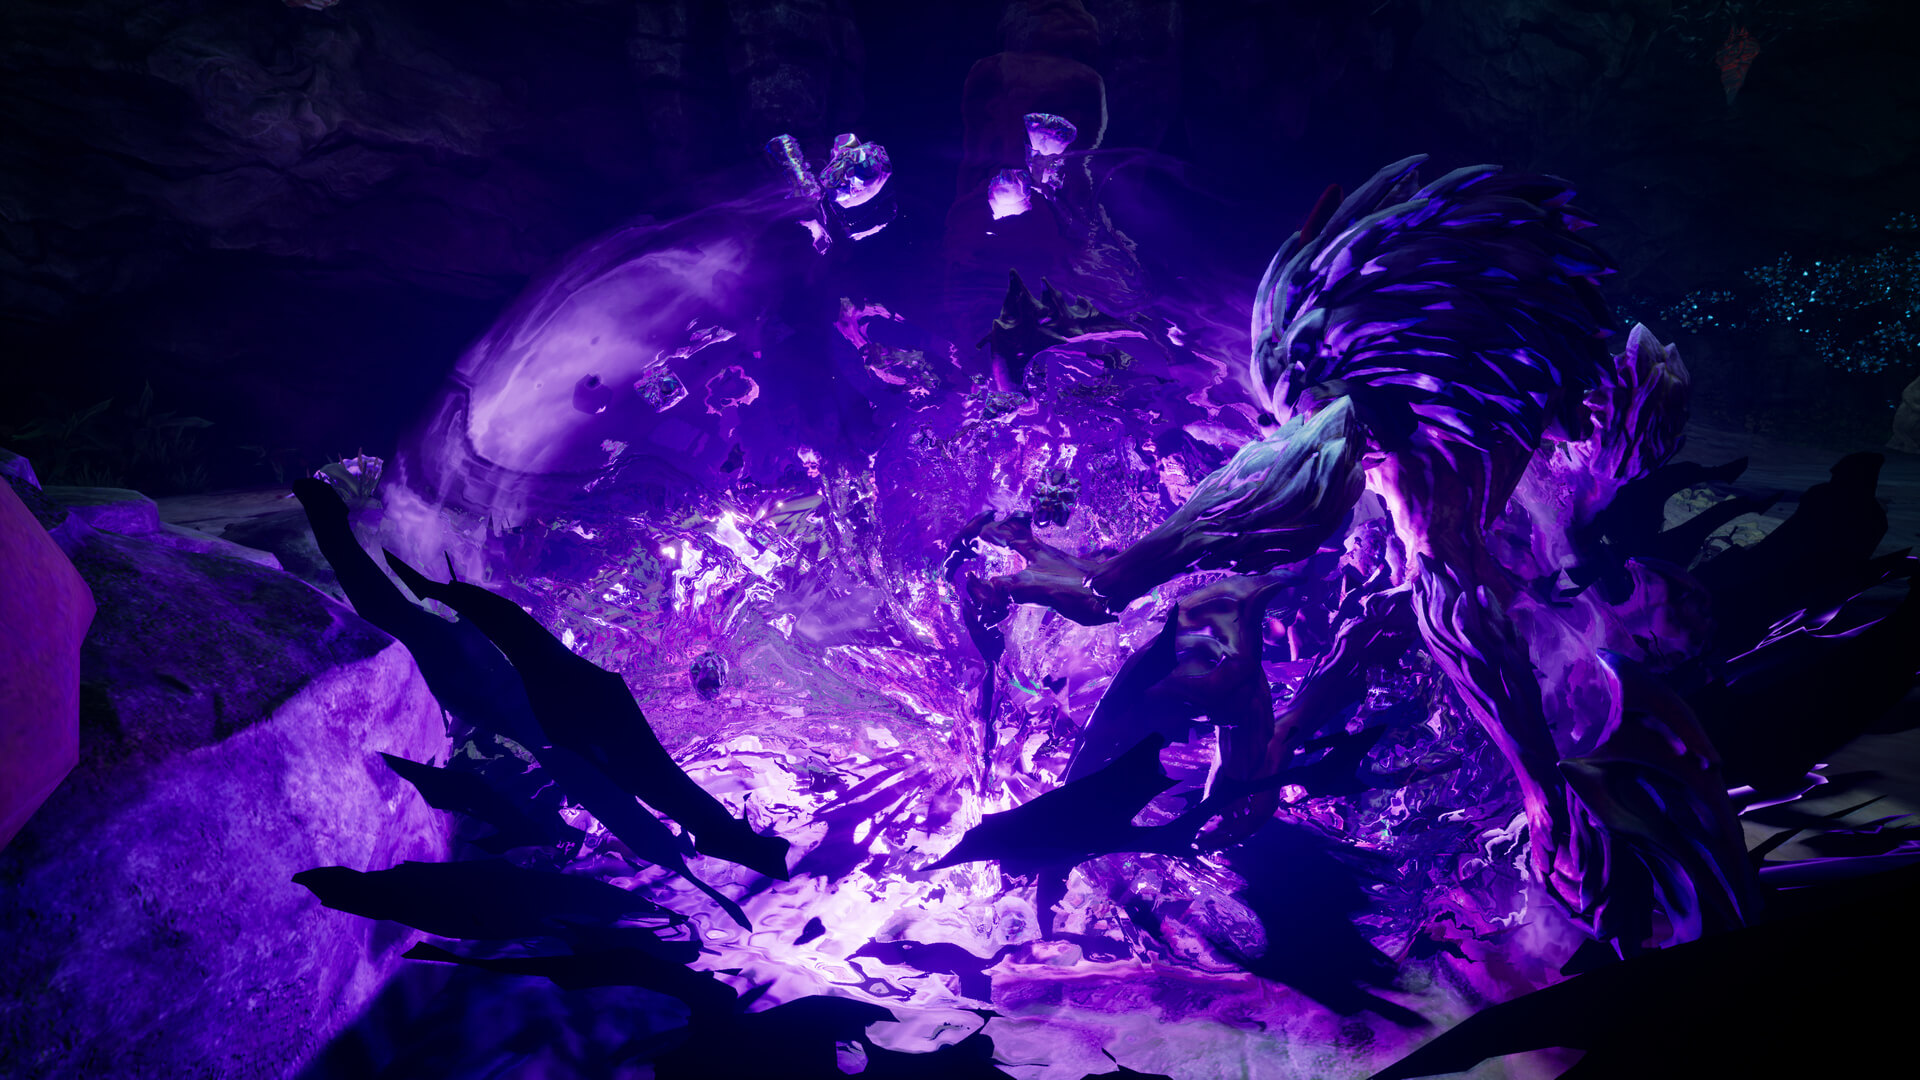 《暗黑血统3》新截图发 紫色“力量怒神”形体曝光